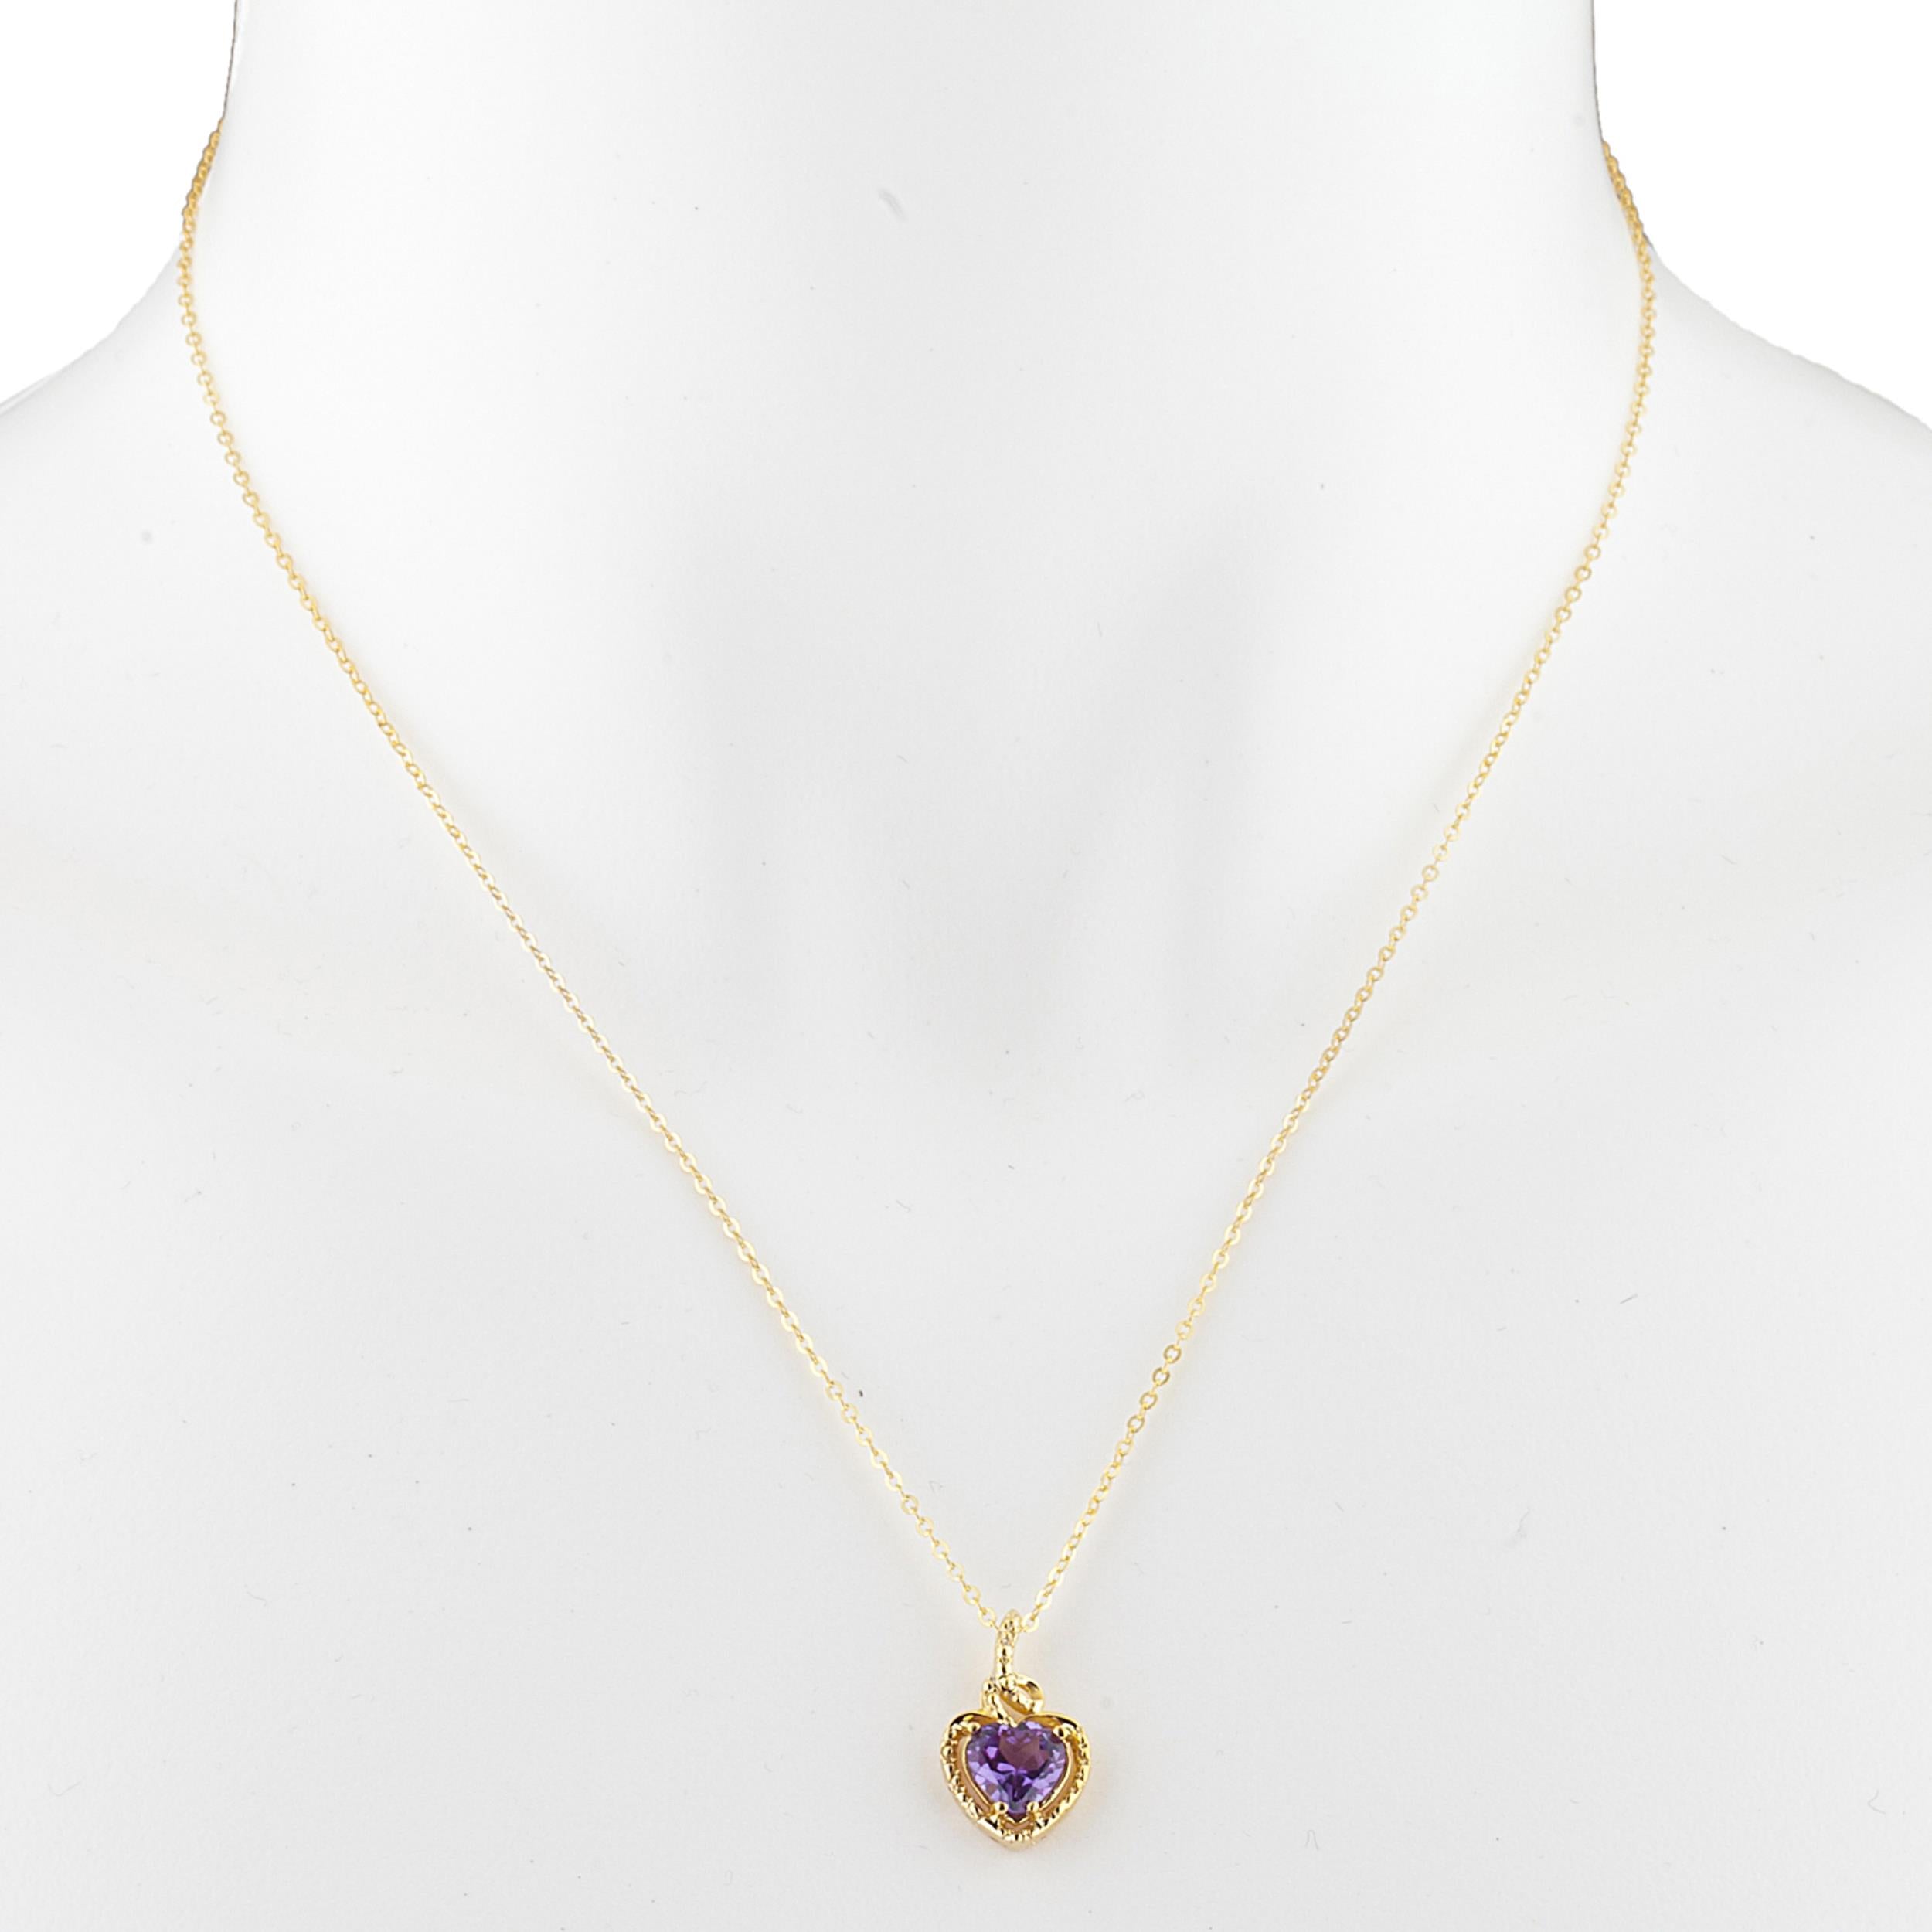 14Kt Gold Alexandrite Heart Design Pendant Necklace